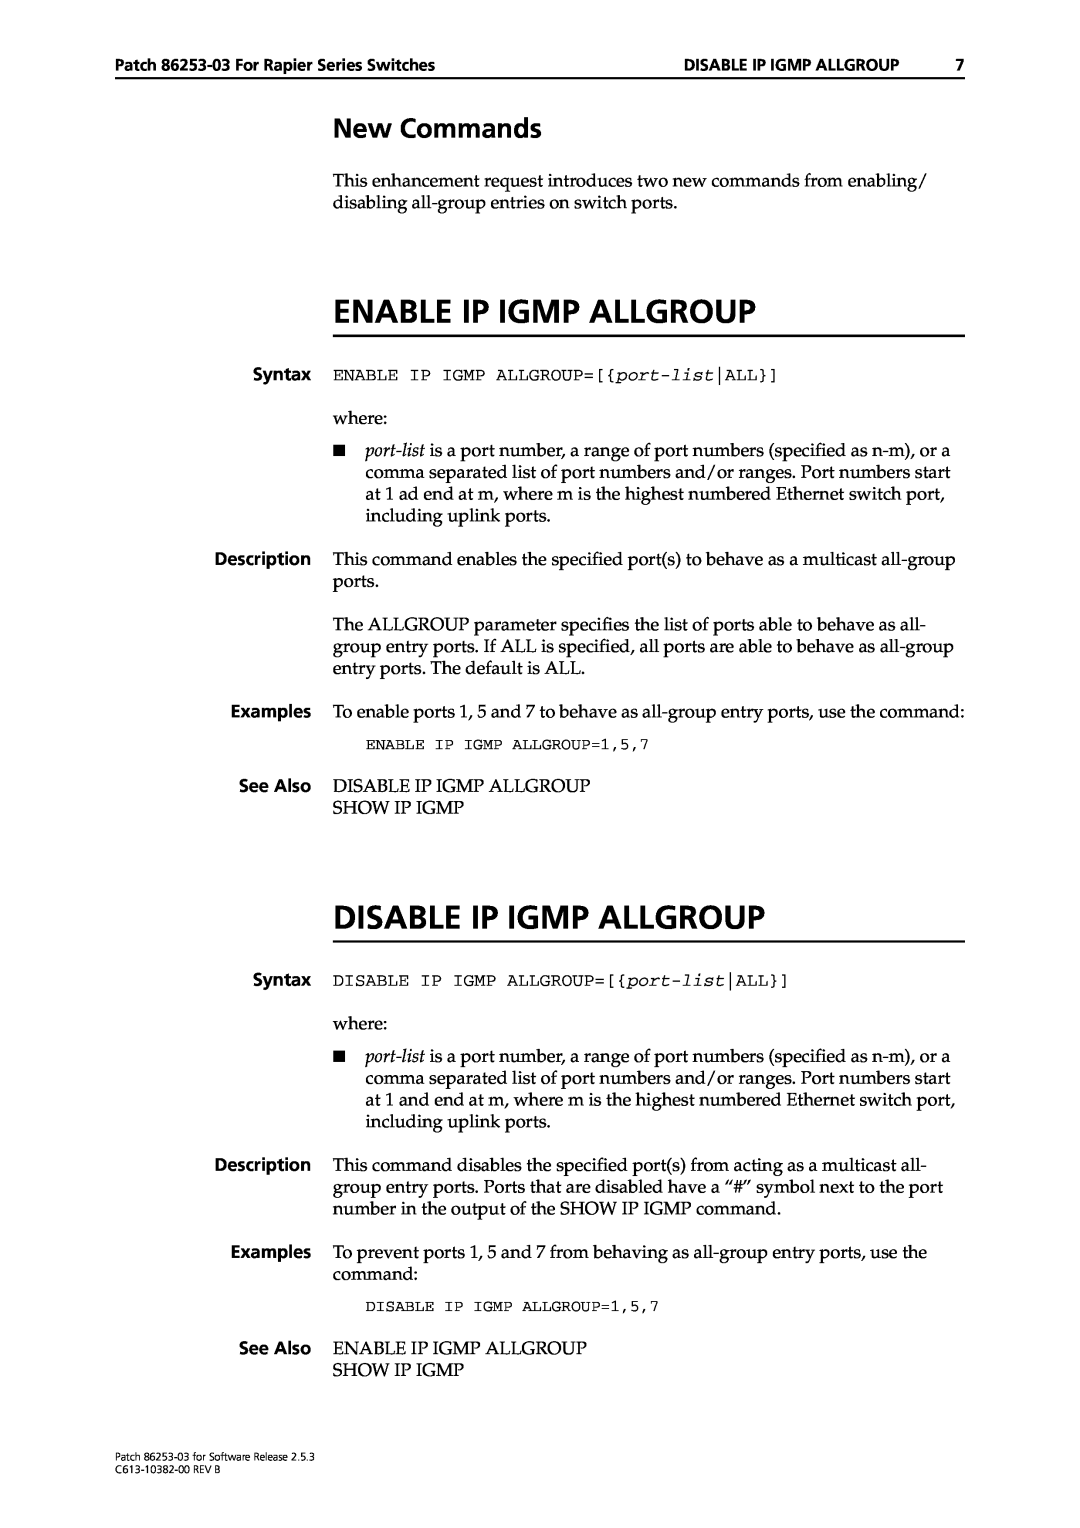 Allied Telesis Rapier Series manual Enable Ip Igmp Allgroup, Disable Ip Igmp Allgroup, New Commands 